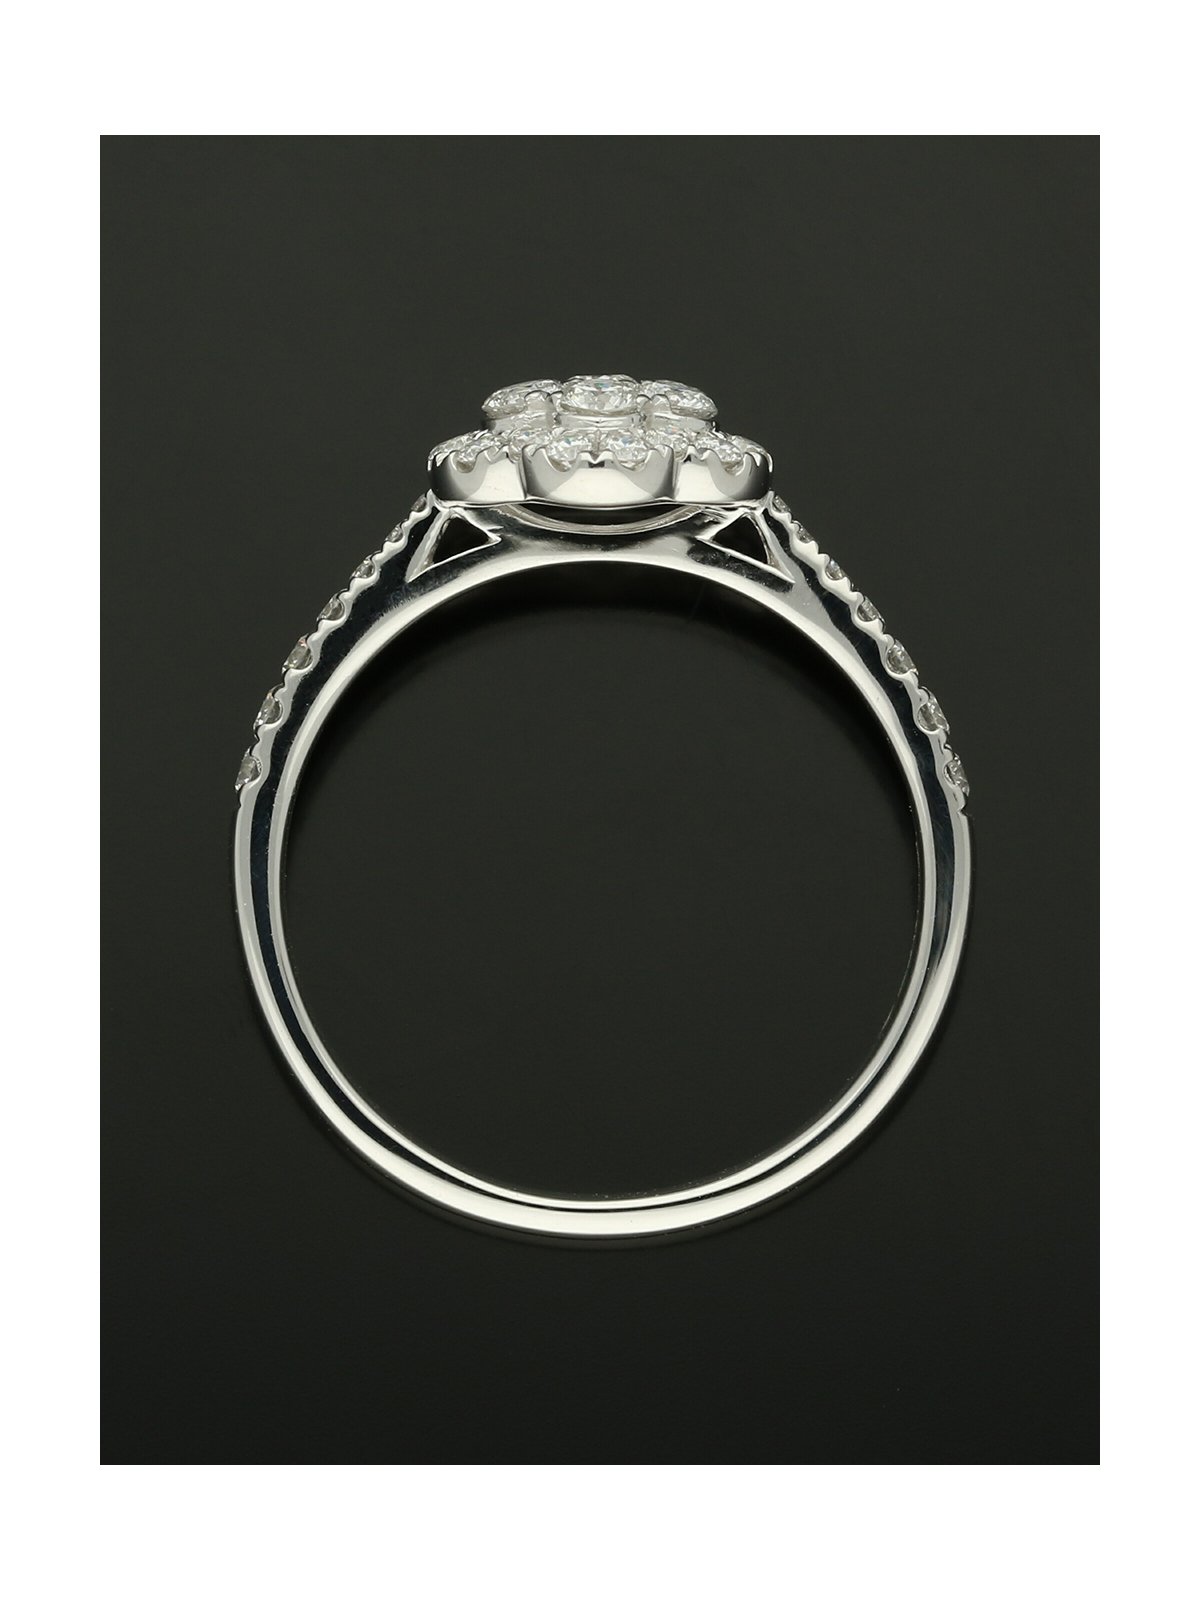 Diamond Cluster Ring 0.72ct Round Brilliant Cut in Platinum